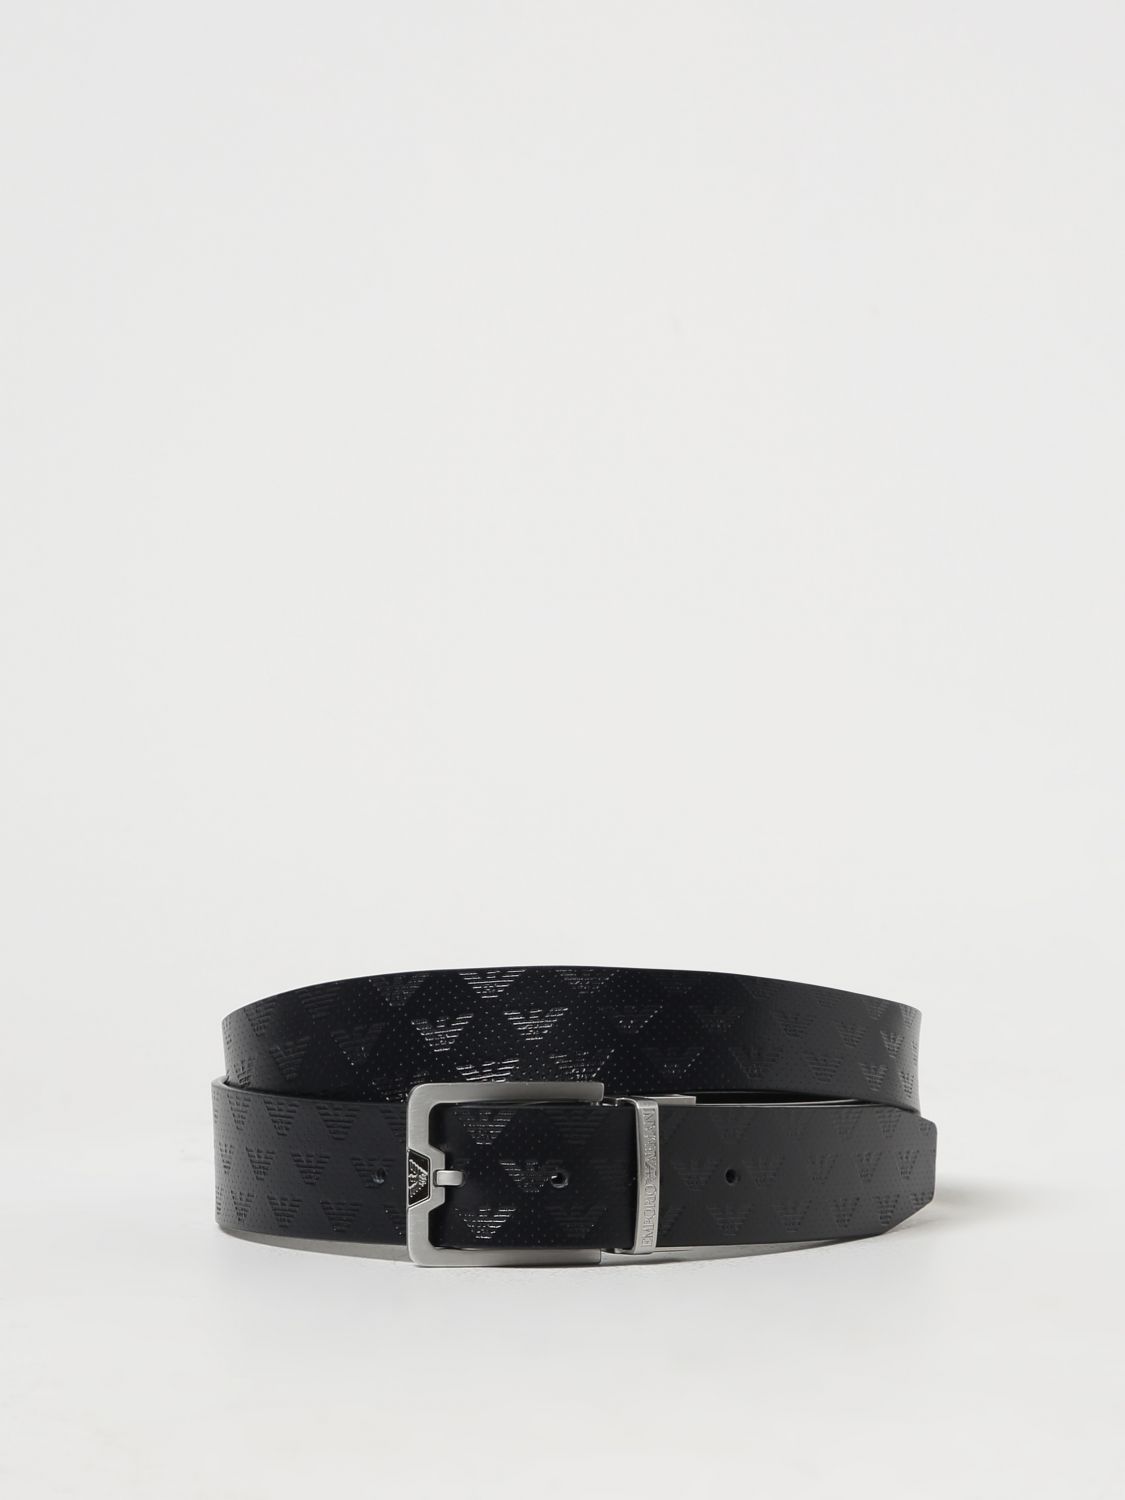 metallic Louis Vuitton Belts for Men - Vestiaire Collective